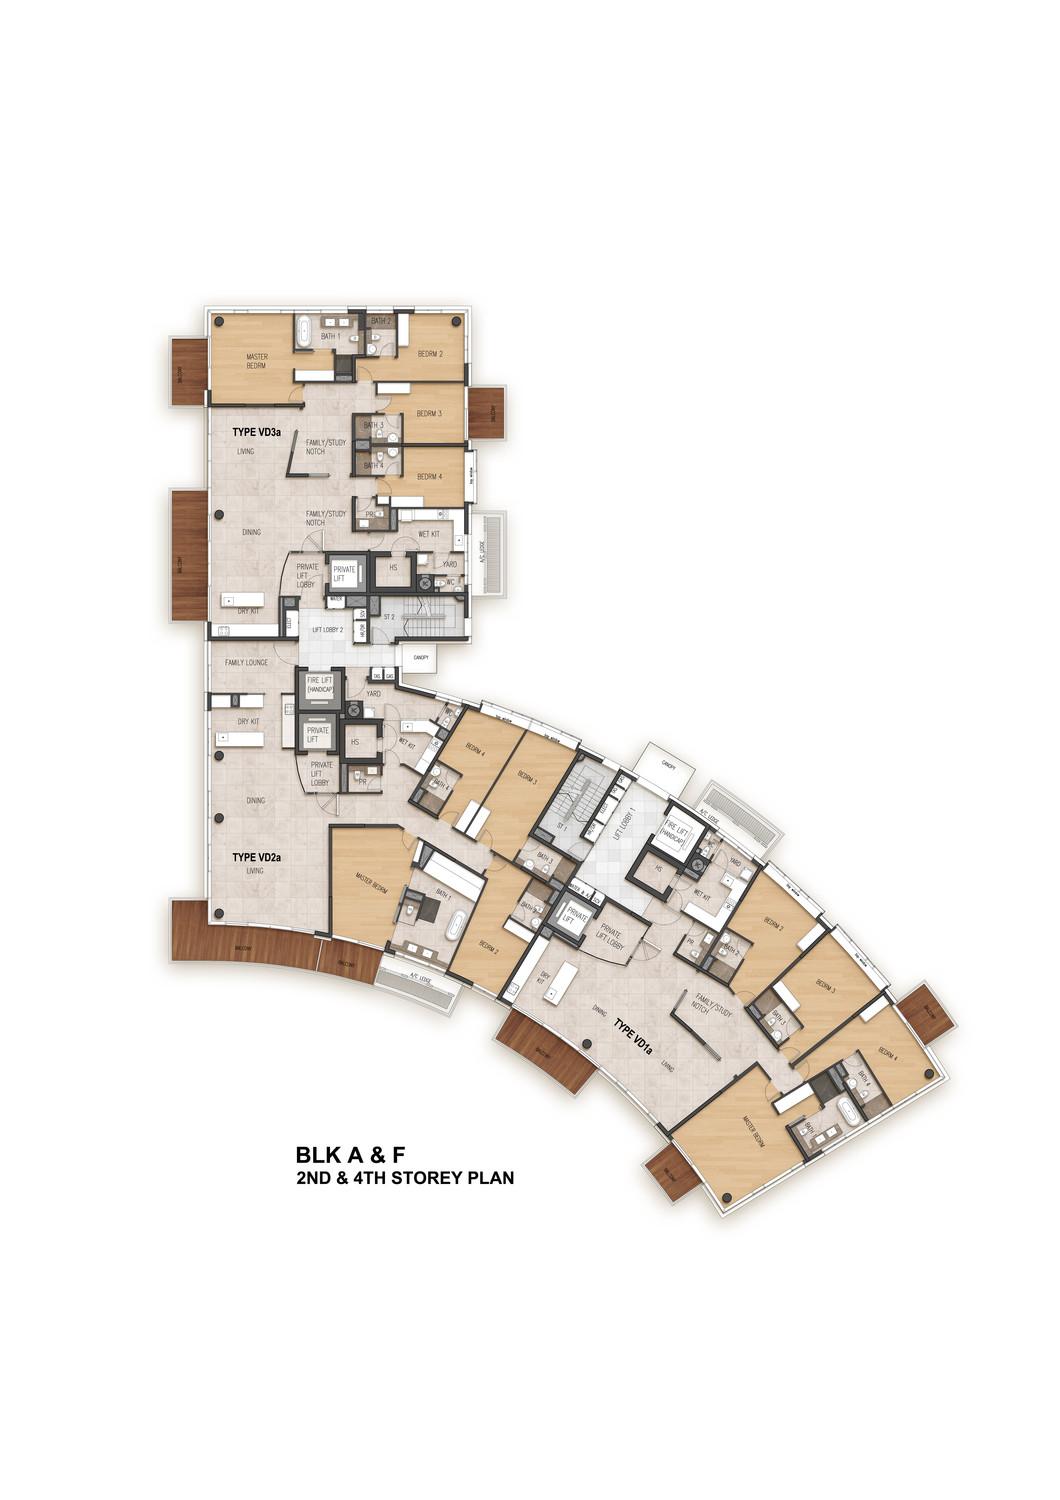 Rendering, typical villa floor plan